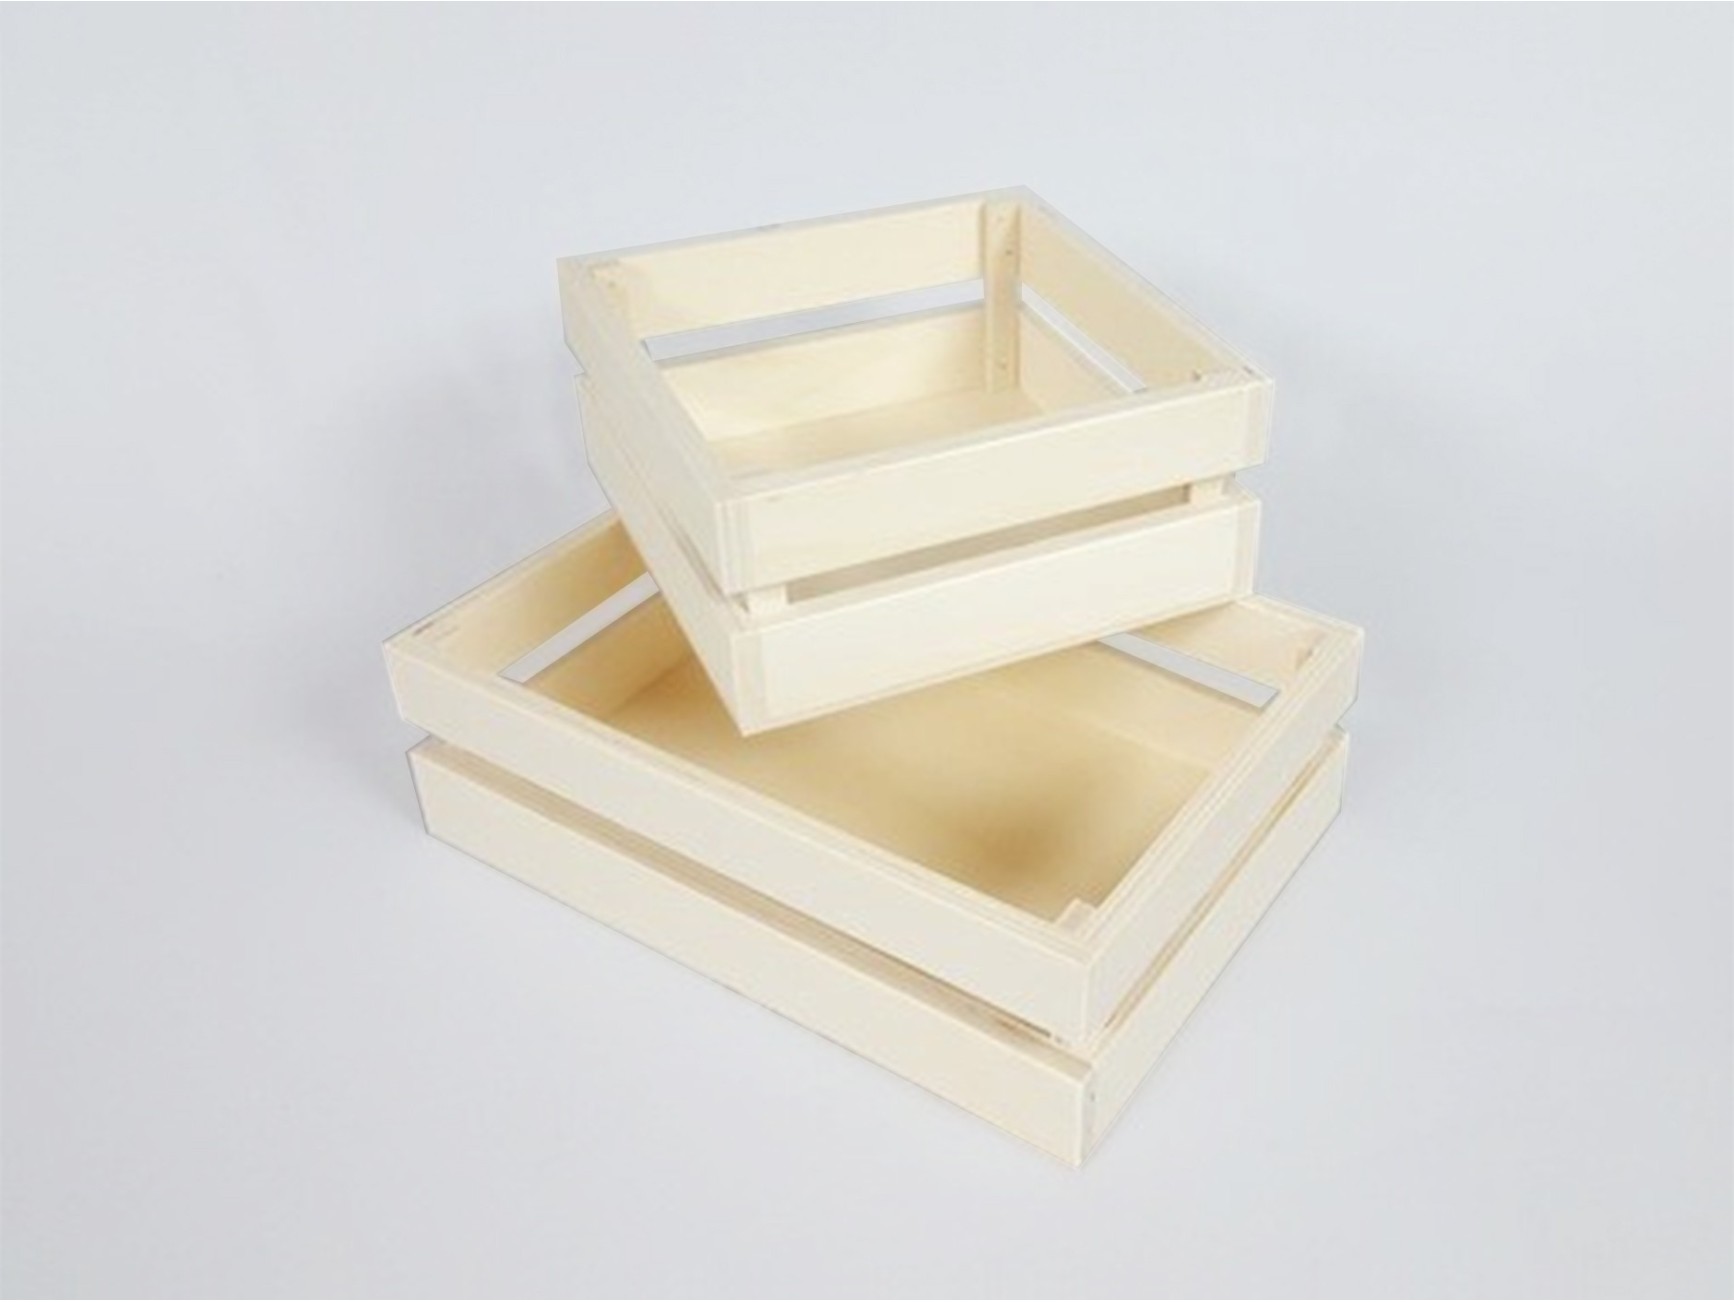  PHOENANCEE Cajas de madera para exhibición, cajas